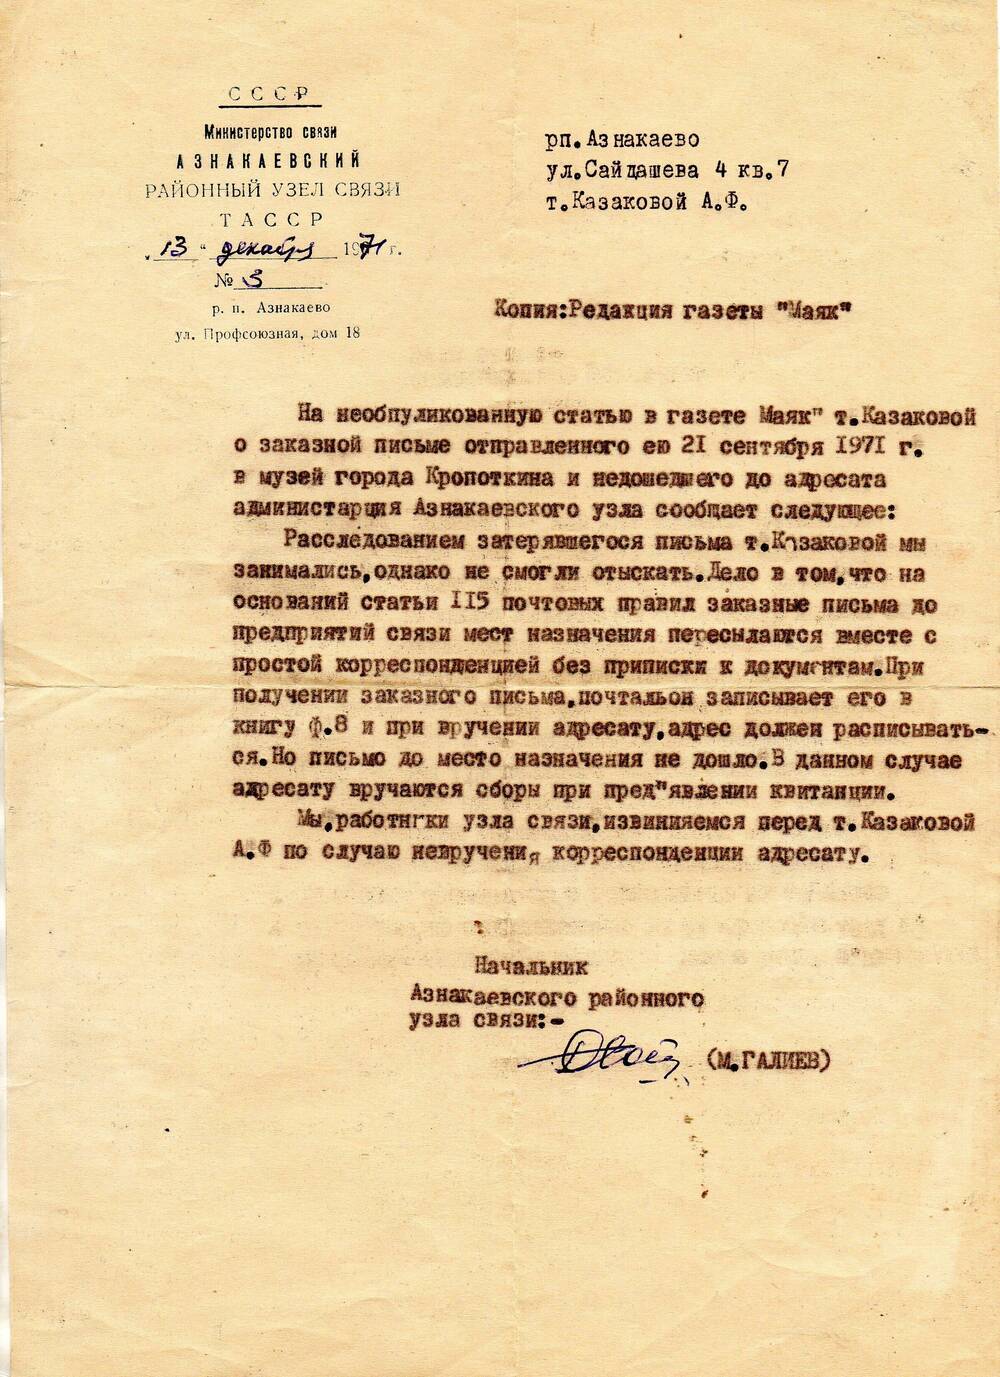 Письмо районного узла связи Казаковой А.Ф. (Катаева) с извинениями по поводу невручения корреспонденции адресату.